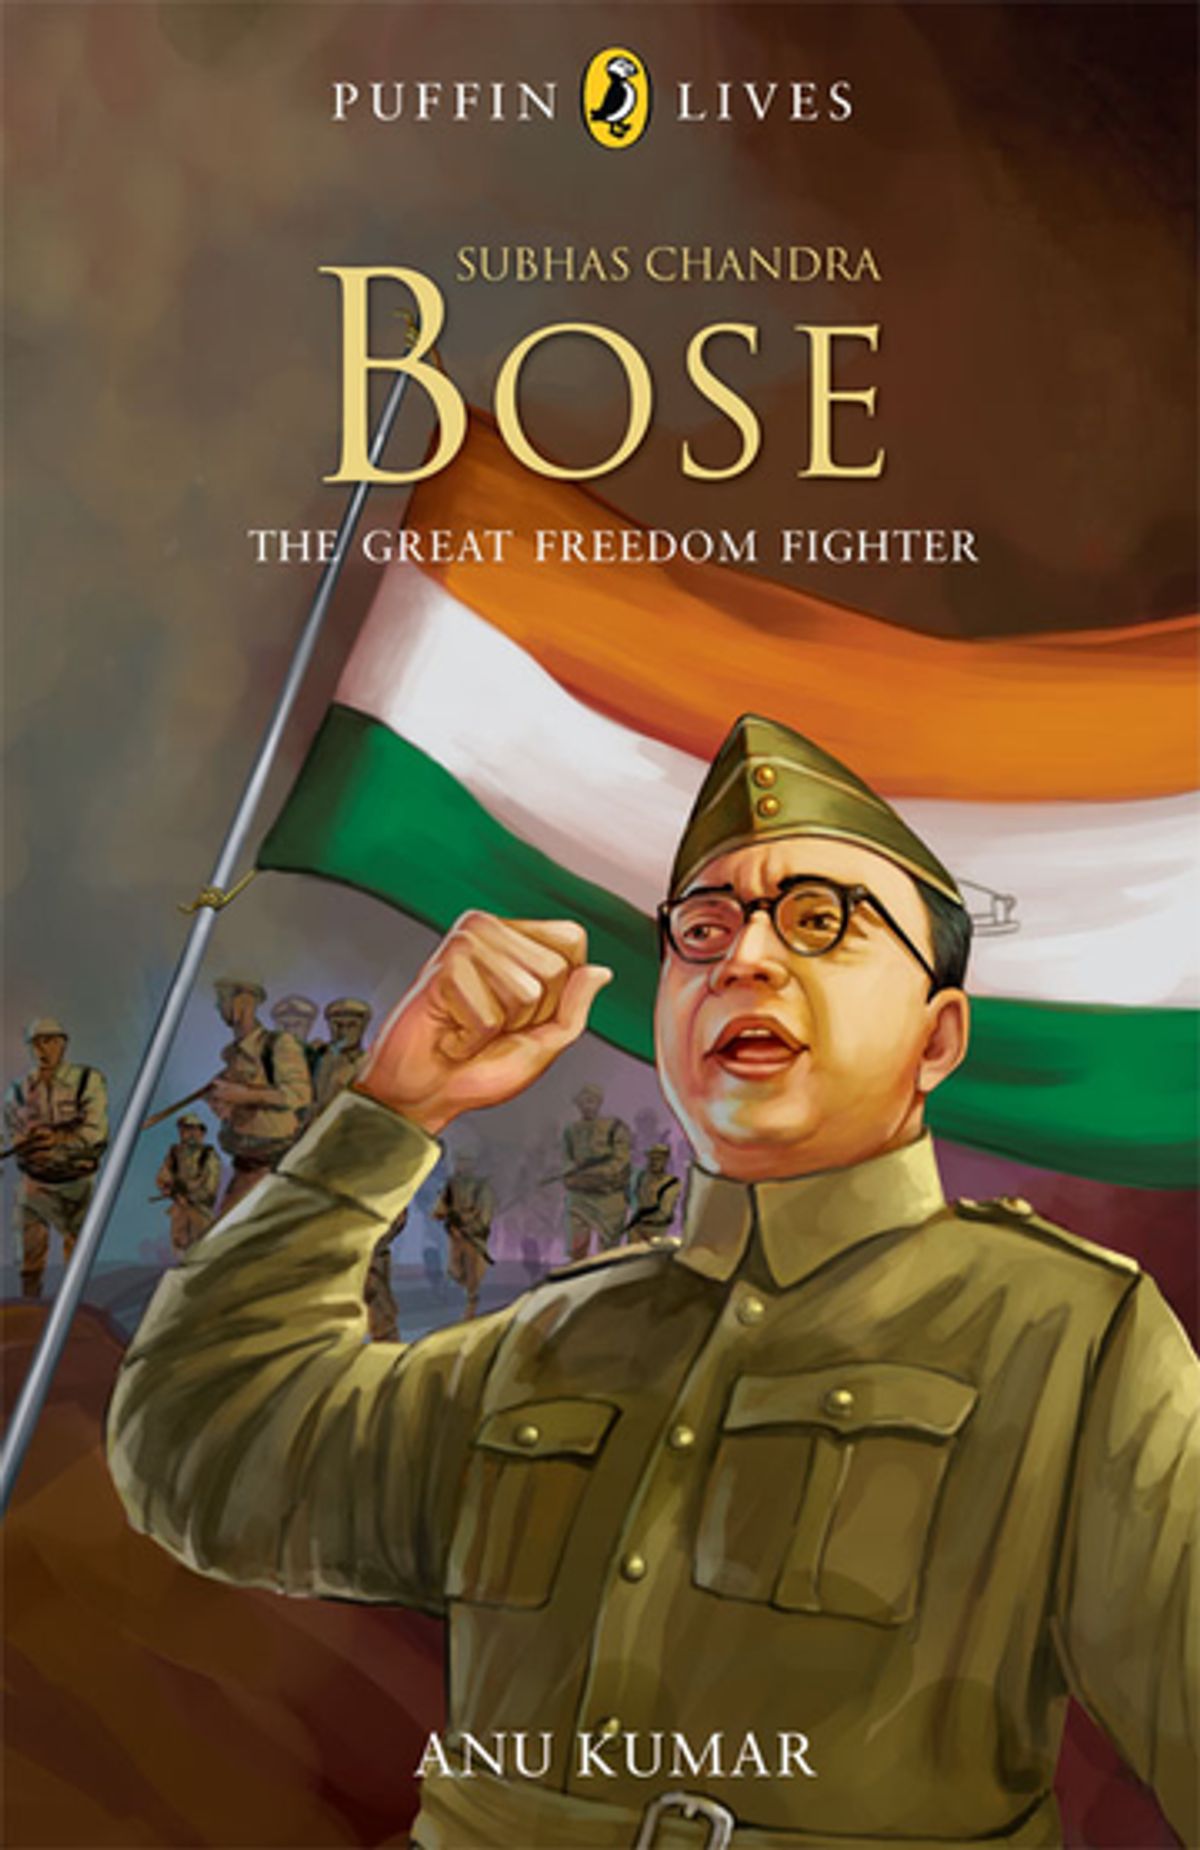 Freedom Fighter Subhash Chandra Bose ...